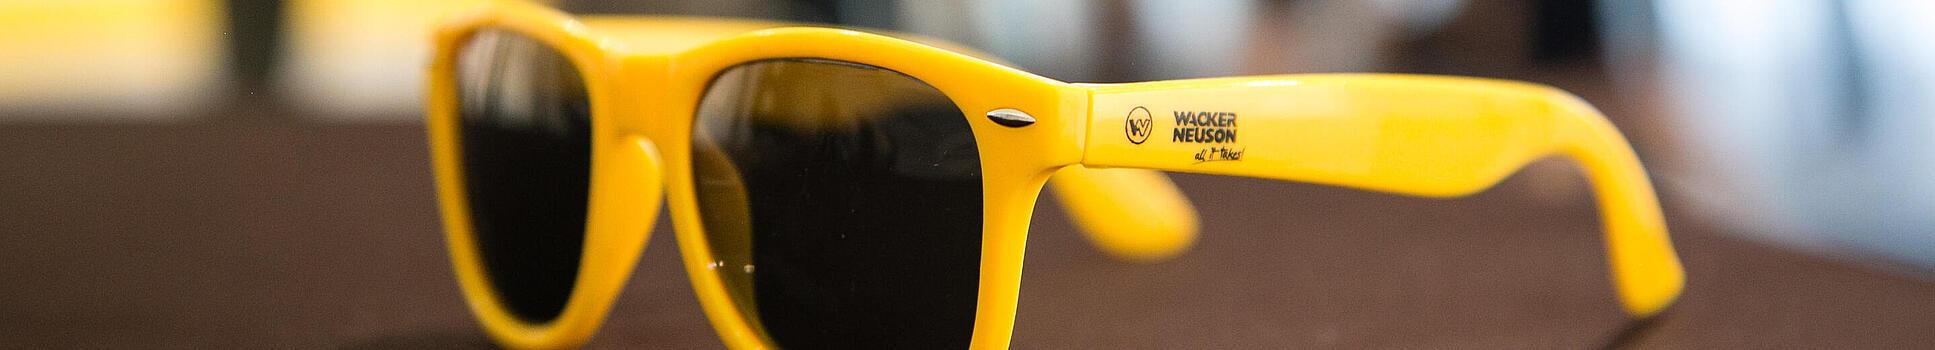 Gelbe Sonnenbrille mit Wacker Neuson Logo.